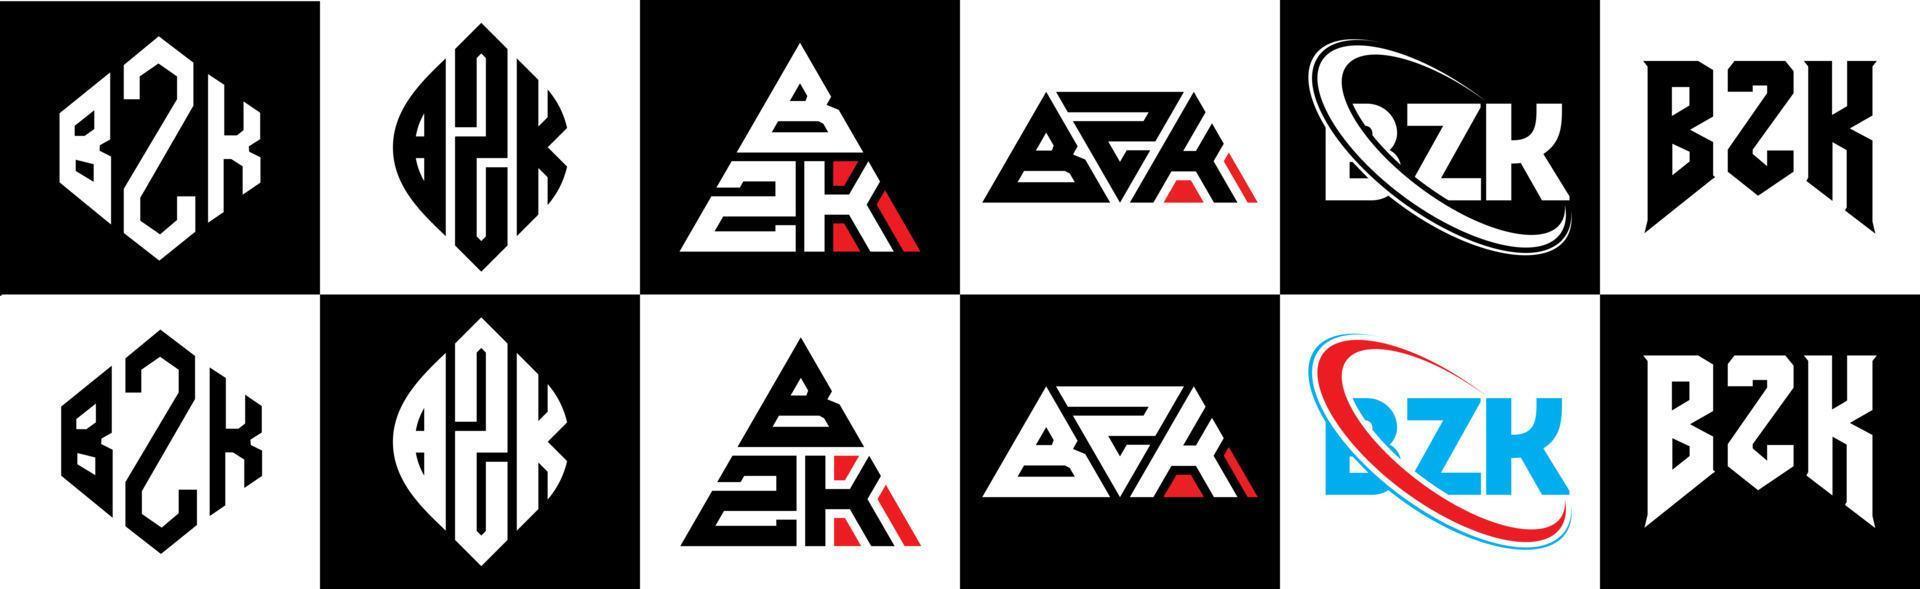 création de logo de lettre bzk en six styles. polygone bzk, cercle, triangle, hexagone, style plat et simple avec logo de lettre de variation de couleur noir et blanc dans un plan de travail. logo bzk minimaliste et classique vecteur